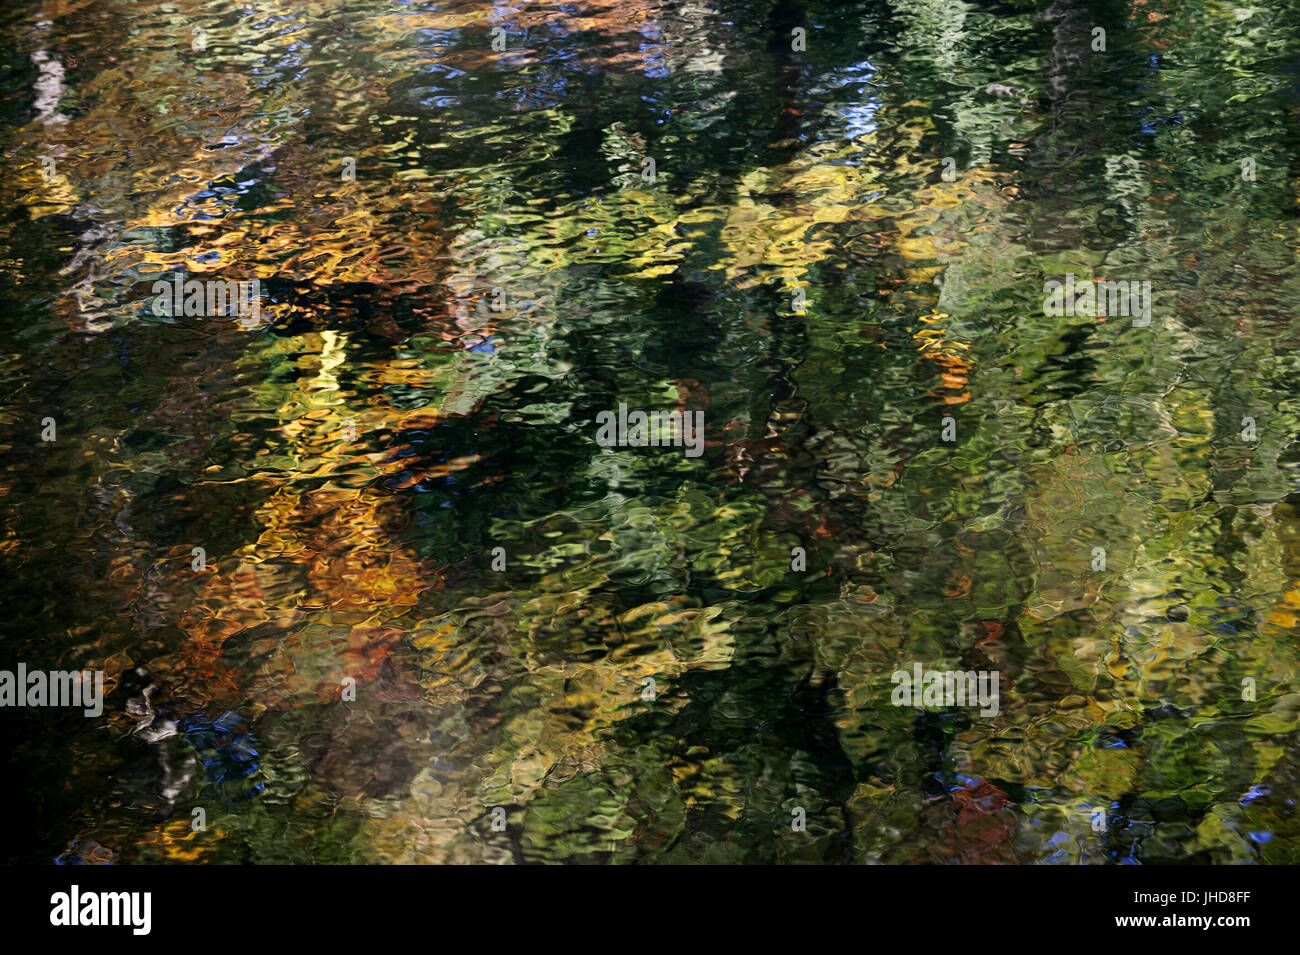 En miroir des arbres dans l'eau, en Rhénanie du Nord-Westphalie, Allemagne | Baeume spiegeln sich im Wasser, Nordrhein-Westfalen, Deutschland Banque D'Images